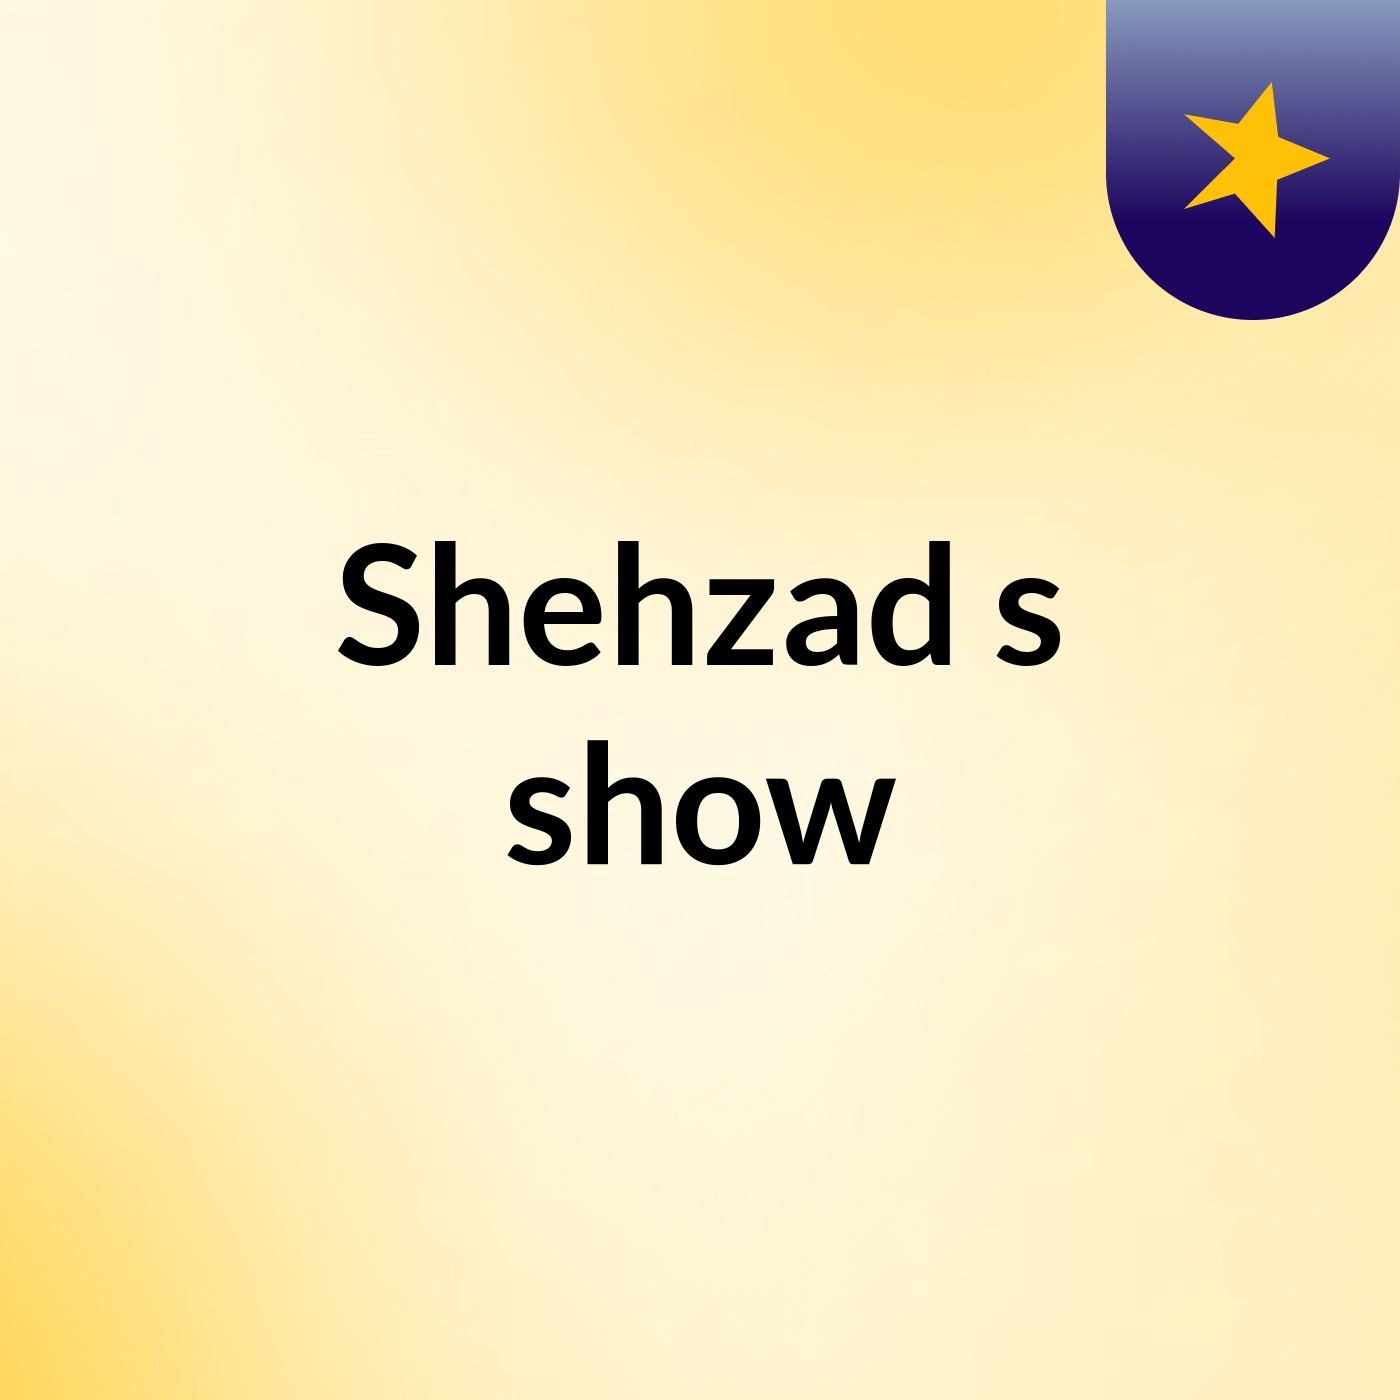 Shehzad's show